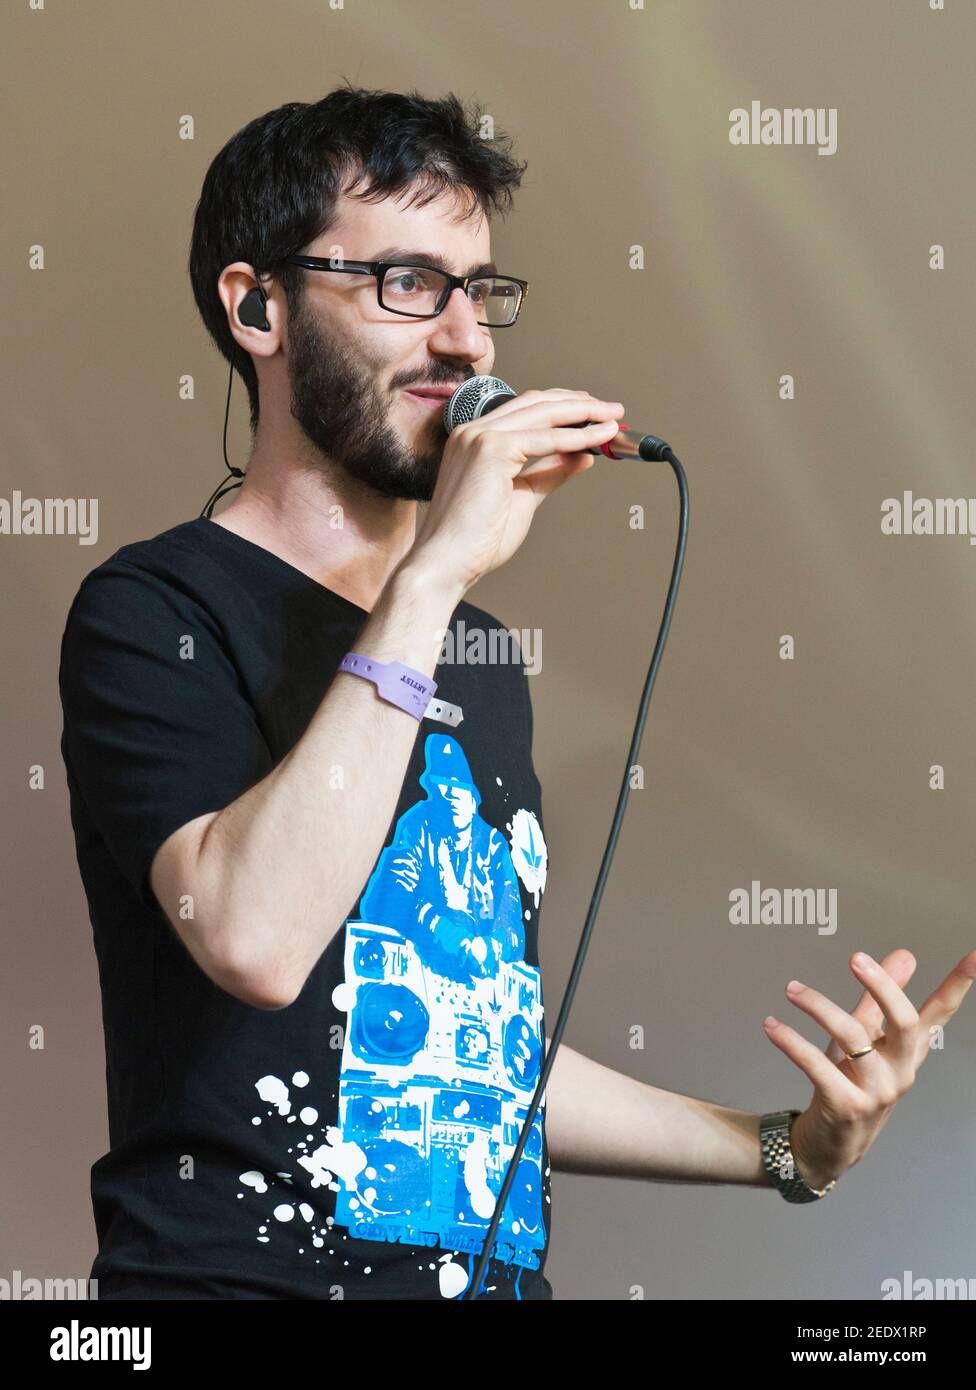 Beatboxer britannique, Shlomo, qui se déroule au festival Larmer Tree, Royaume-Uni. 14 juillet 2012 Banque D'Images